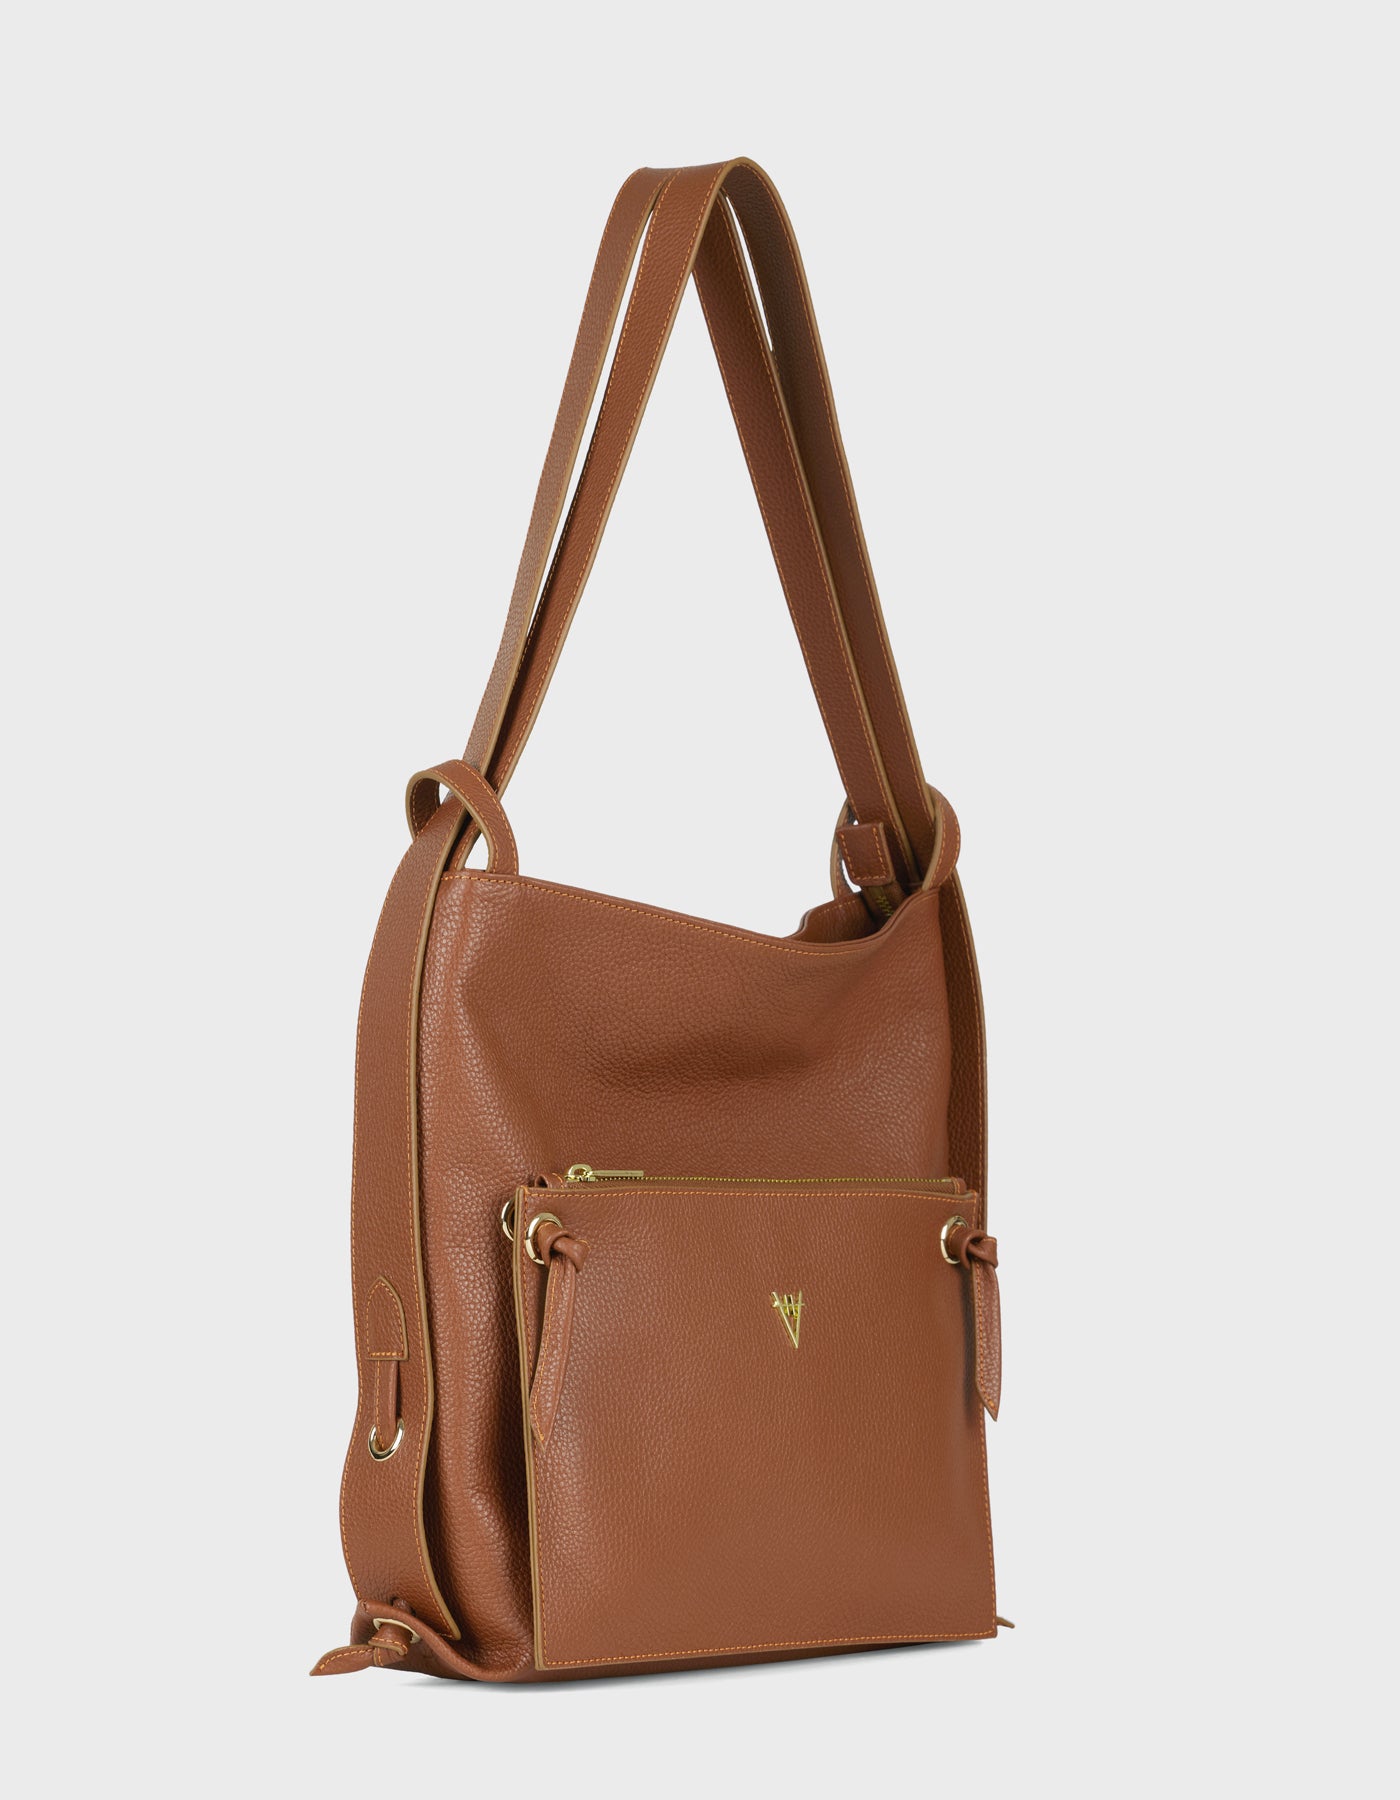 Liber Backpack & Shoulder Bag